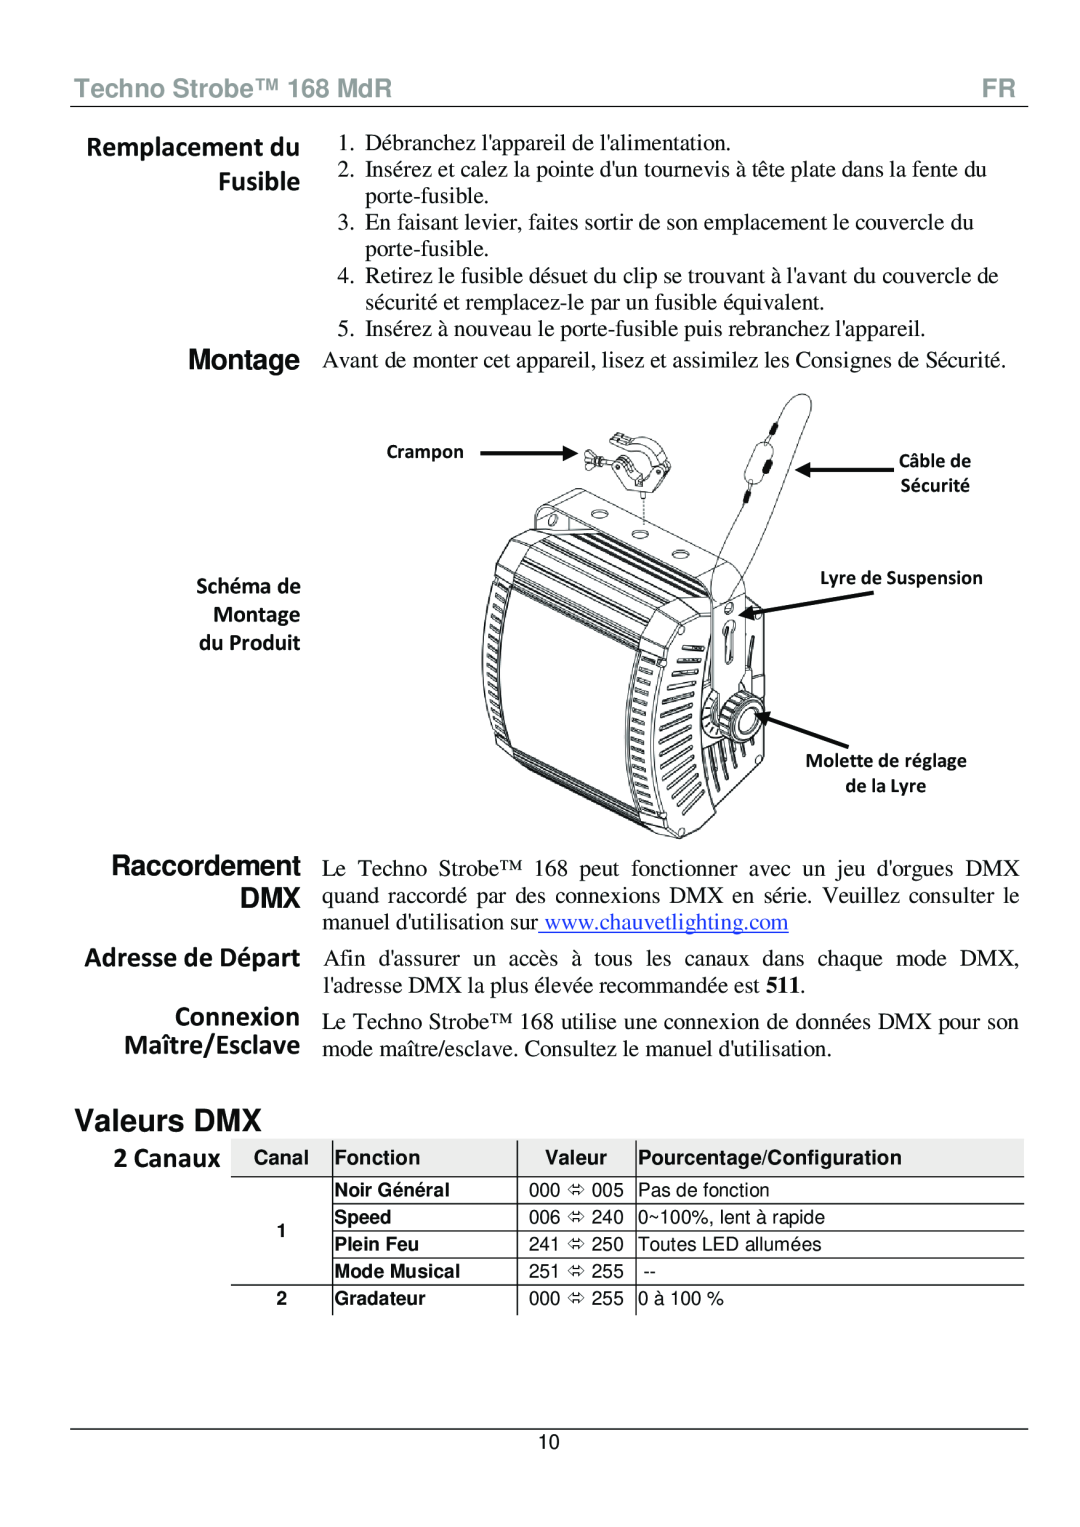 Chauvet 168 manual Valeurs DMX, Montage, Raccordement DMX, Adresse de Départ Connexion Maître/Esclave, Canaux 